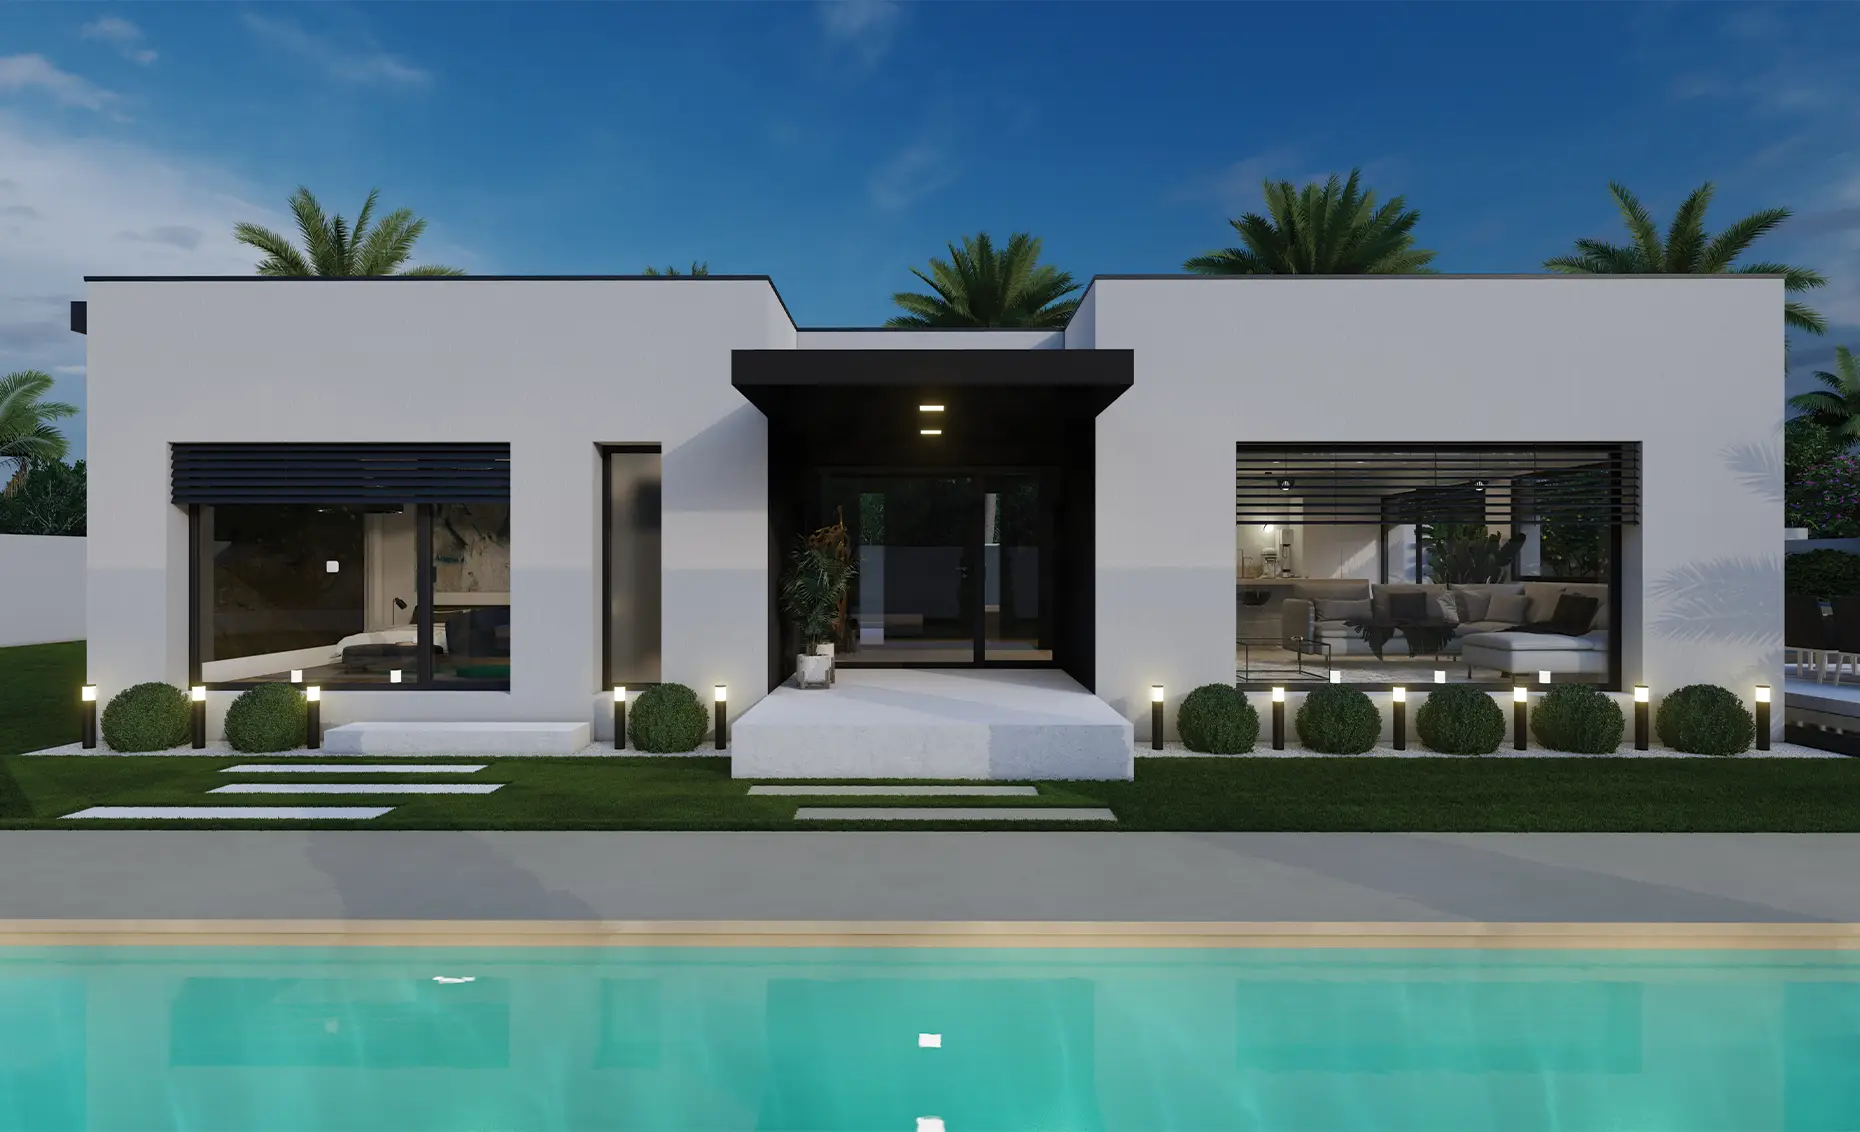 Plan gratuit à télécharger et permis de construire pas cher maison moderne californienne contemporaine en H / 77m² / T3 / plain-pied / piscine / suite parentale / toit terrasse. Collection Orion, maison Eta - Vue en Plan